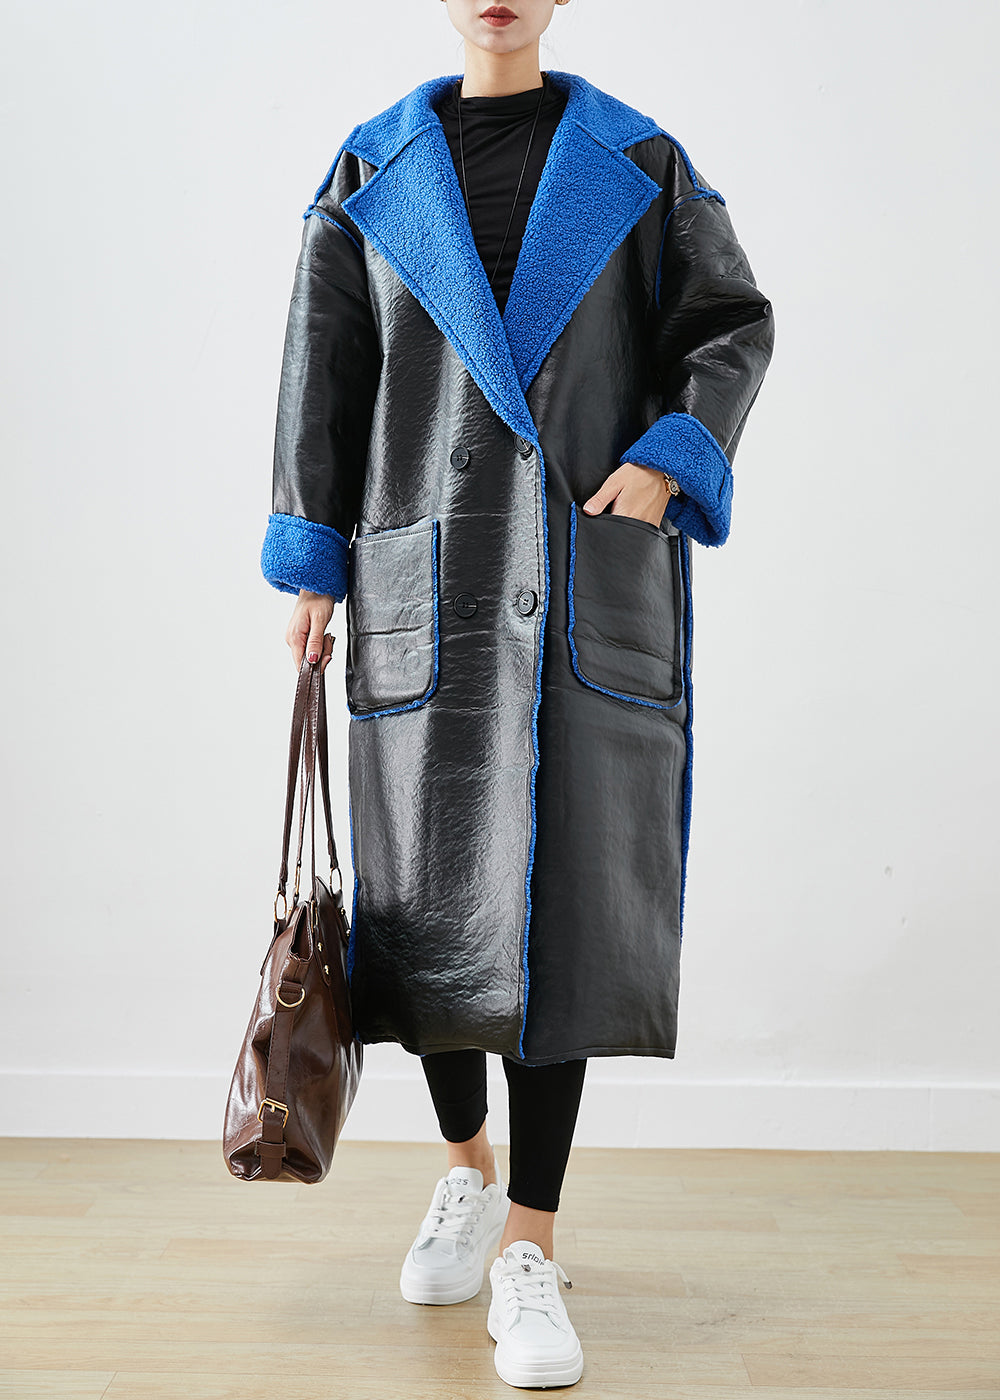 Women Black Fleece Wool Lined Wear On Both Sides Faux Leather Coat Outwear Winter